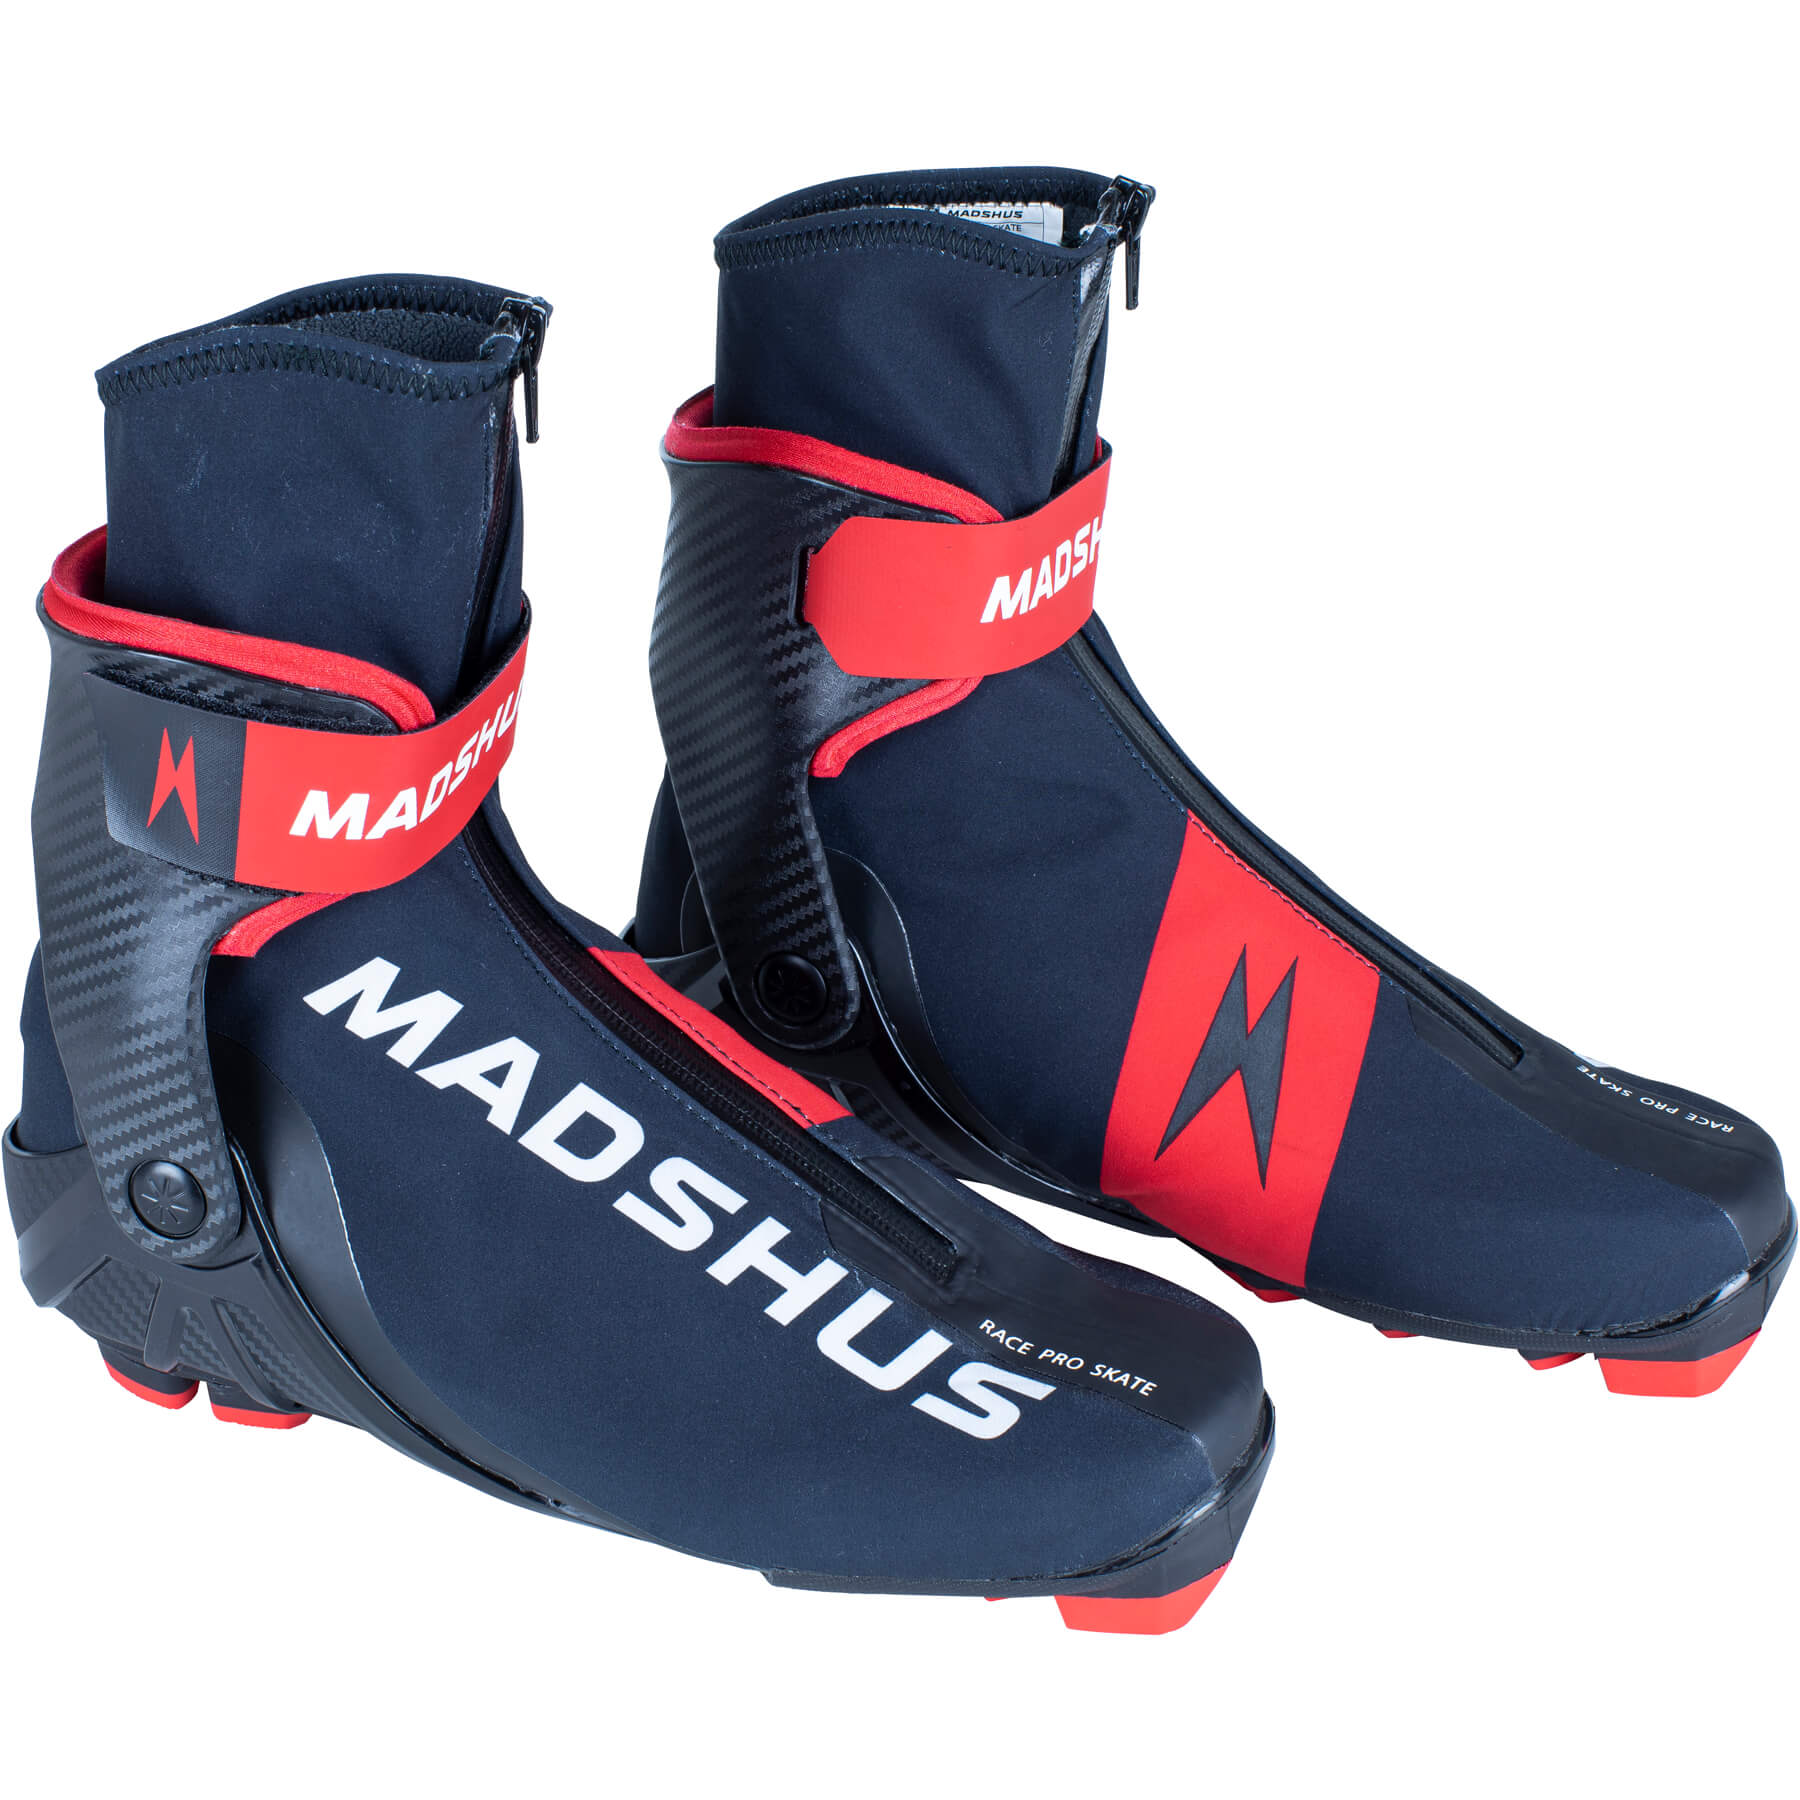 Madshus Race Pro Skate Boot - 0